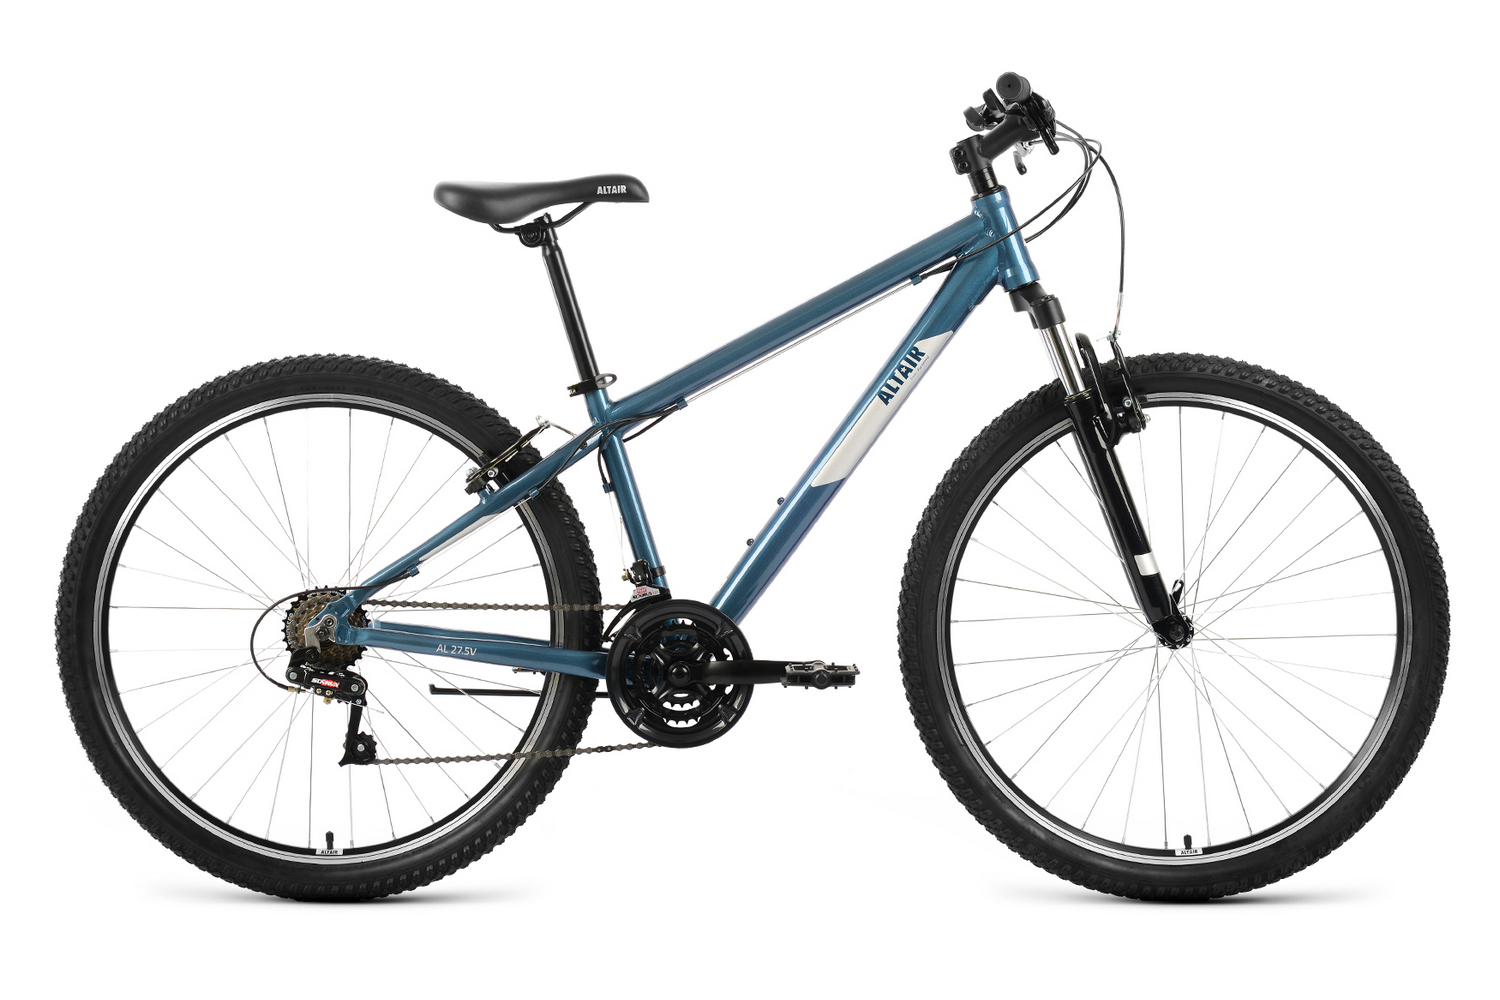 Горный велосипед Altair AL 27.5 V FR, год 2022, цвет Синий-Серебристый, ростовка 19